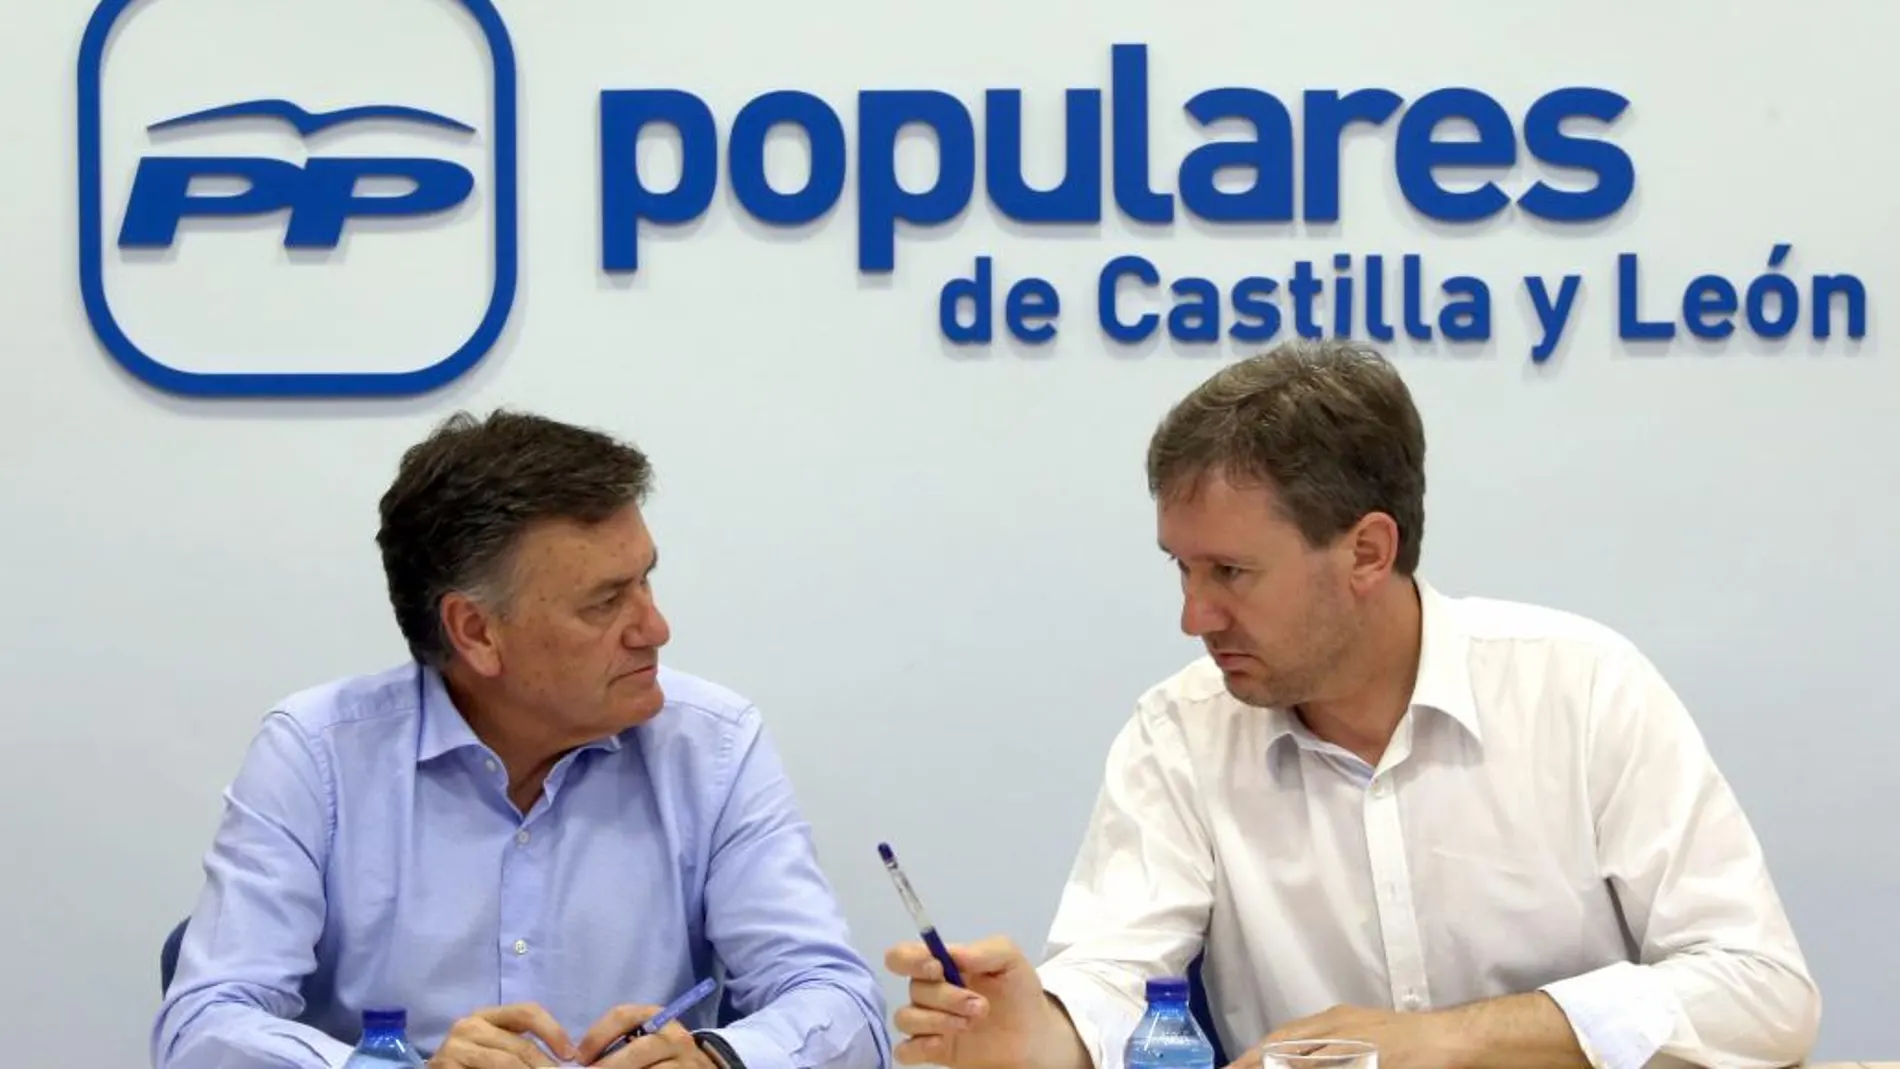 El secretario general del PP de Castilla y León, Francisco Vázquez, conversa con Javier Lacalle